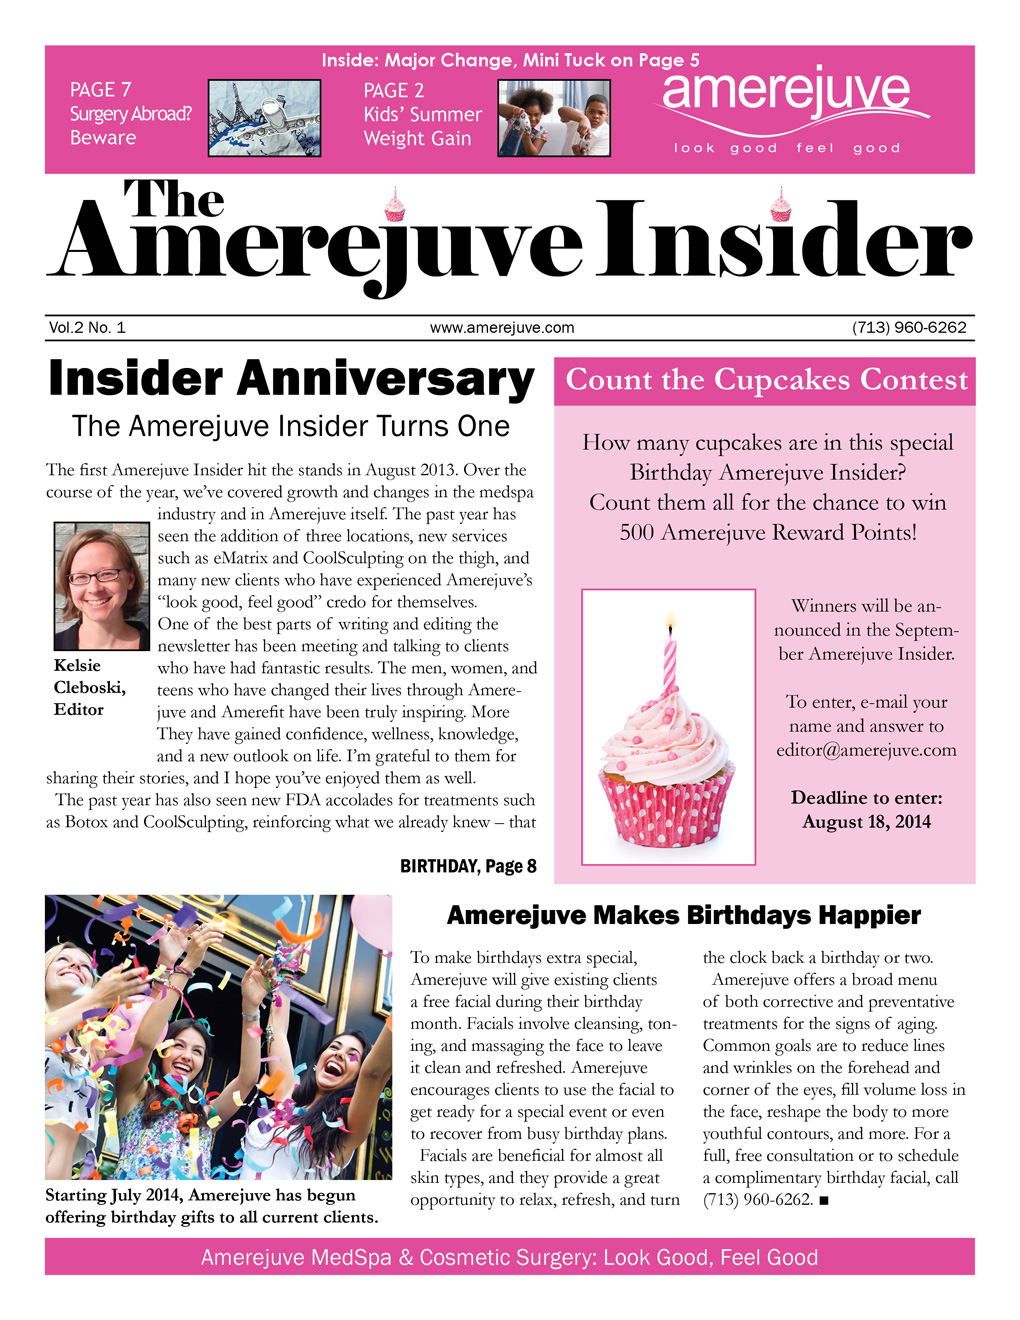 Happy Birthday, Amerejuve Insider!